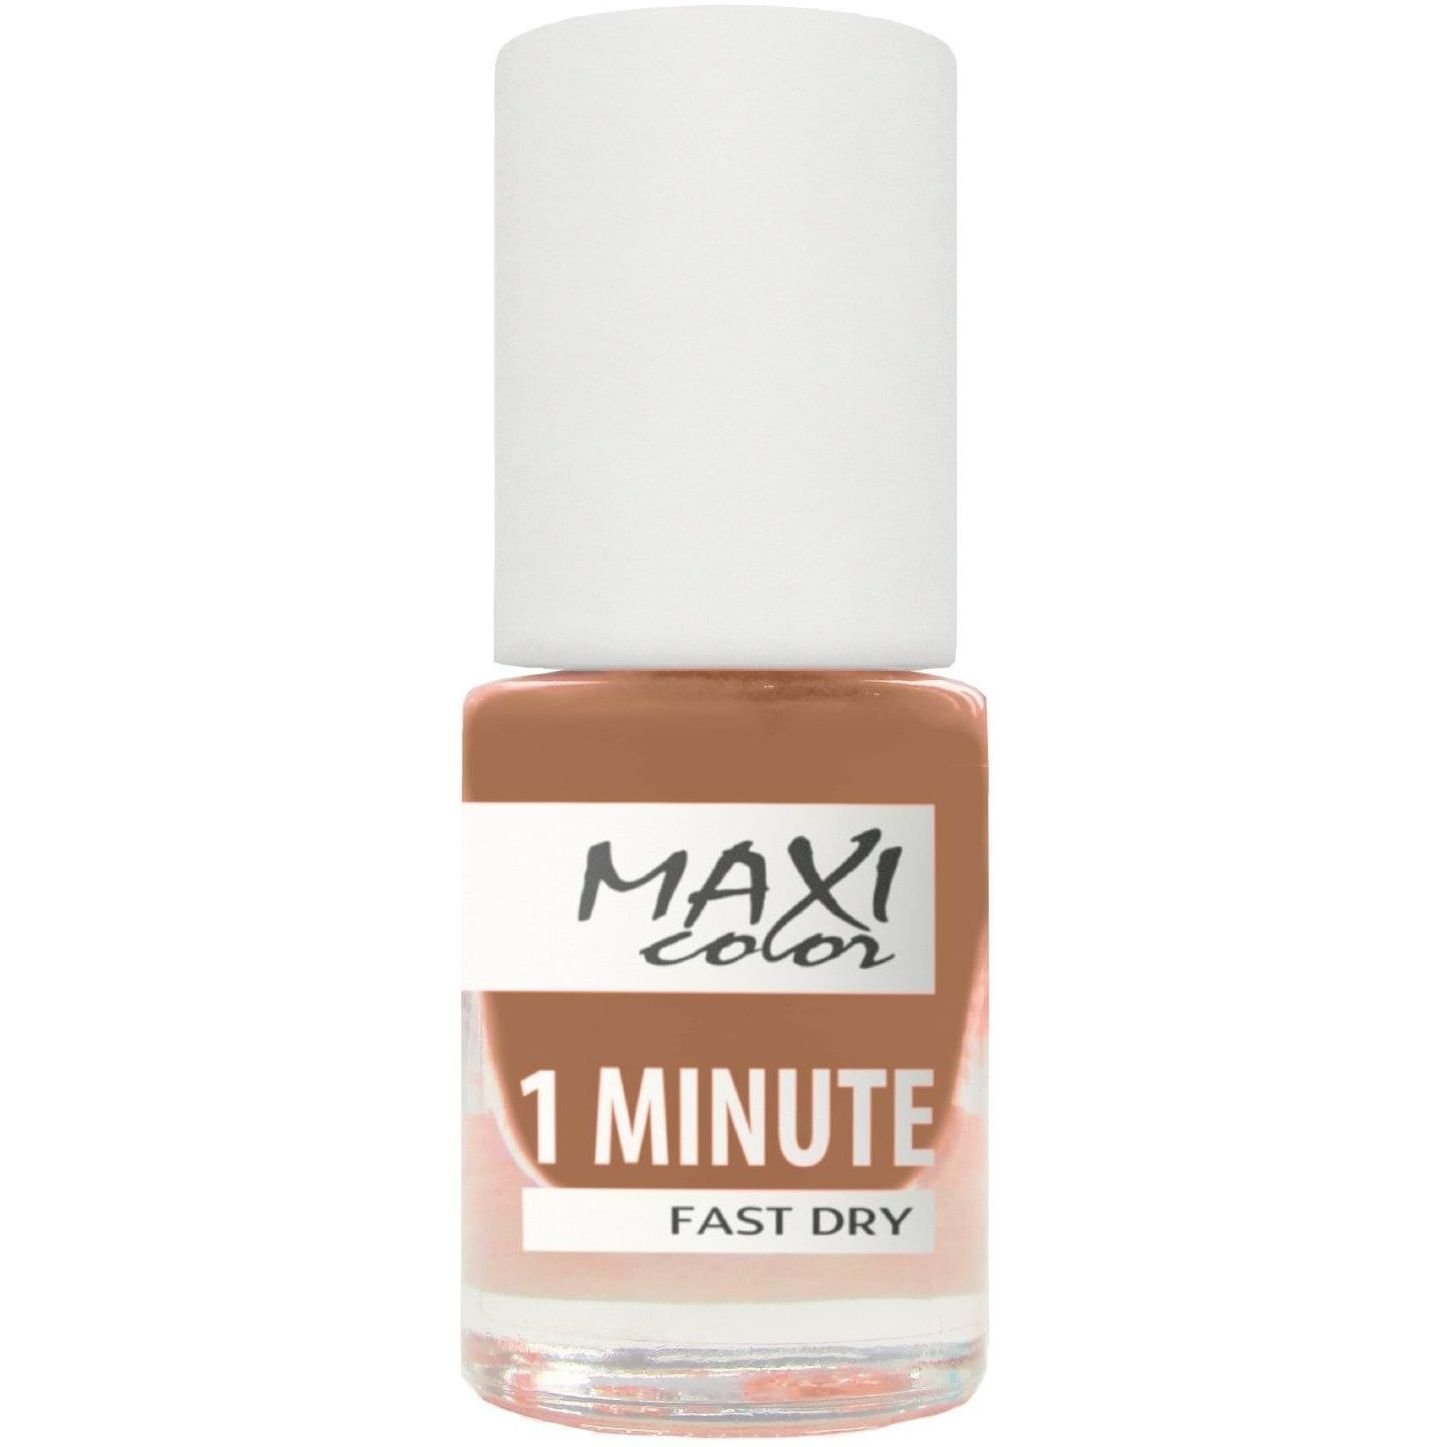 Лак для ногтей Maxi Color 1 Minute Fast Dry тон 011, 6 мл - фото 1